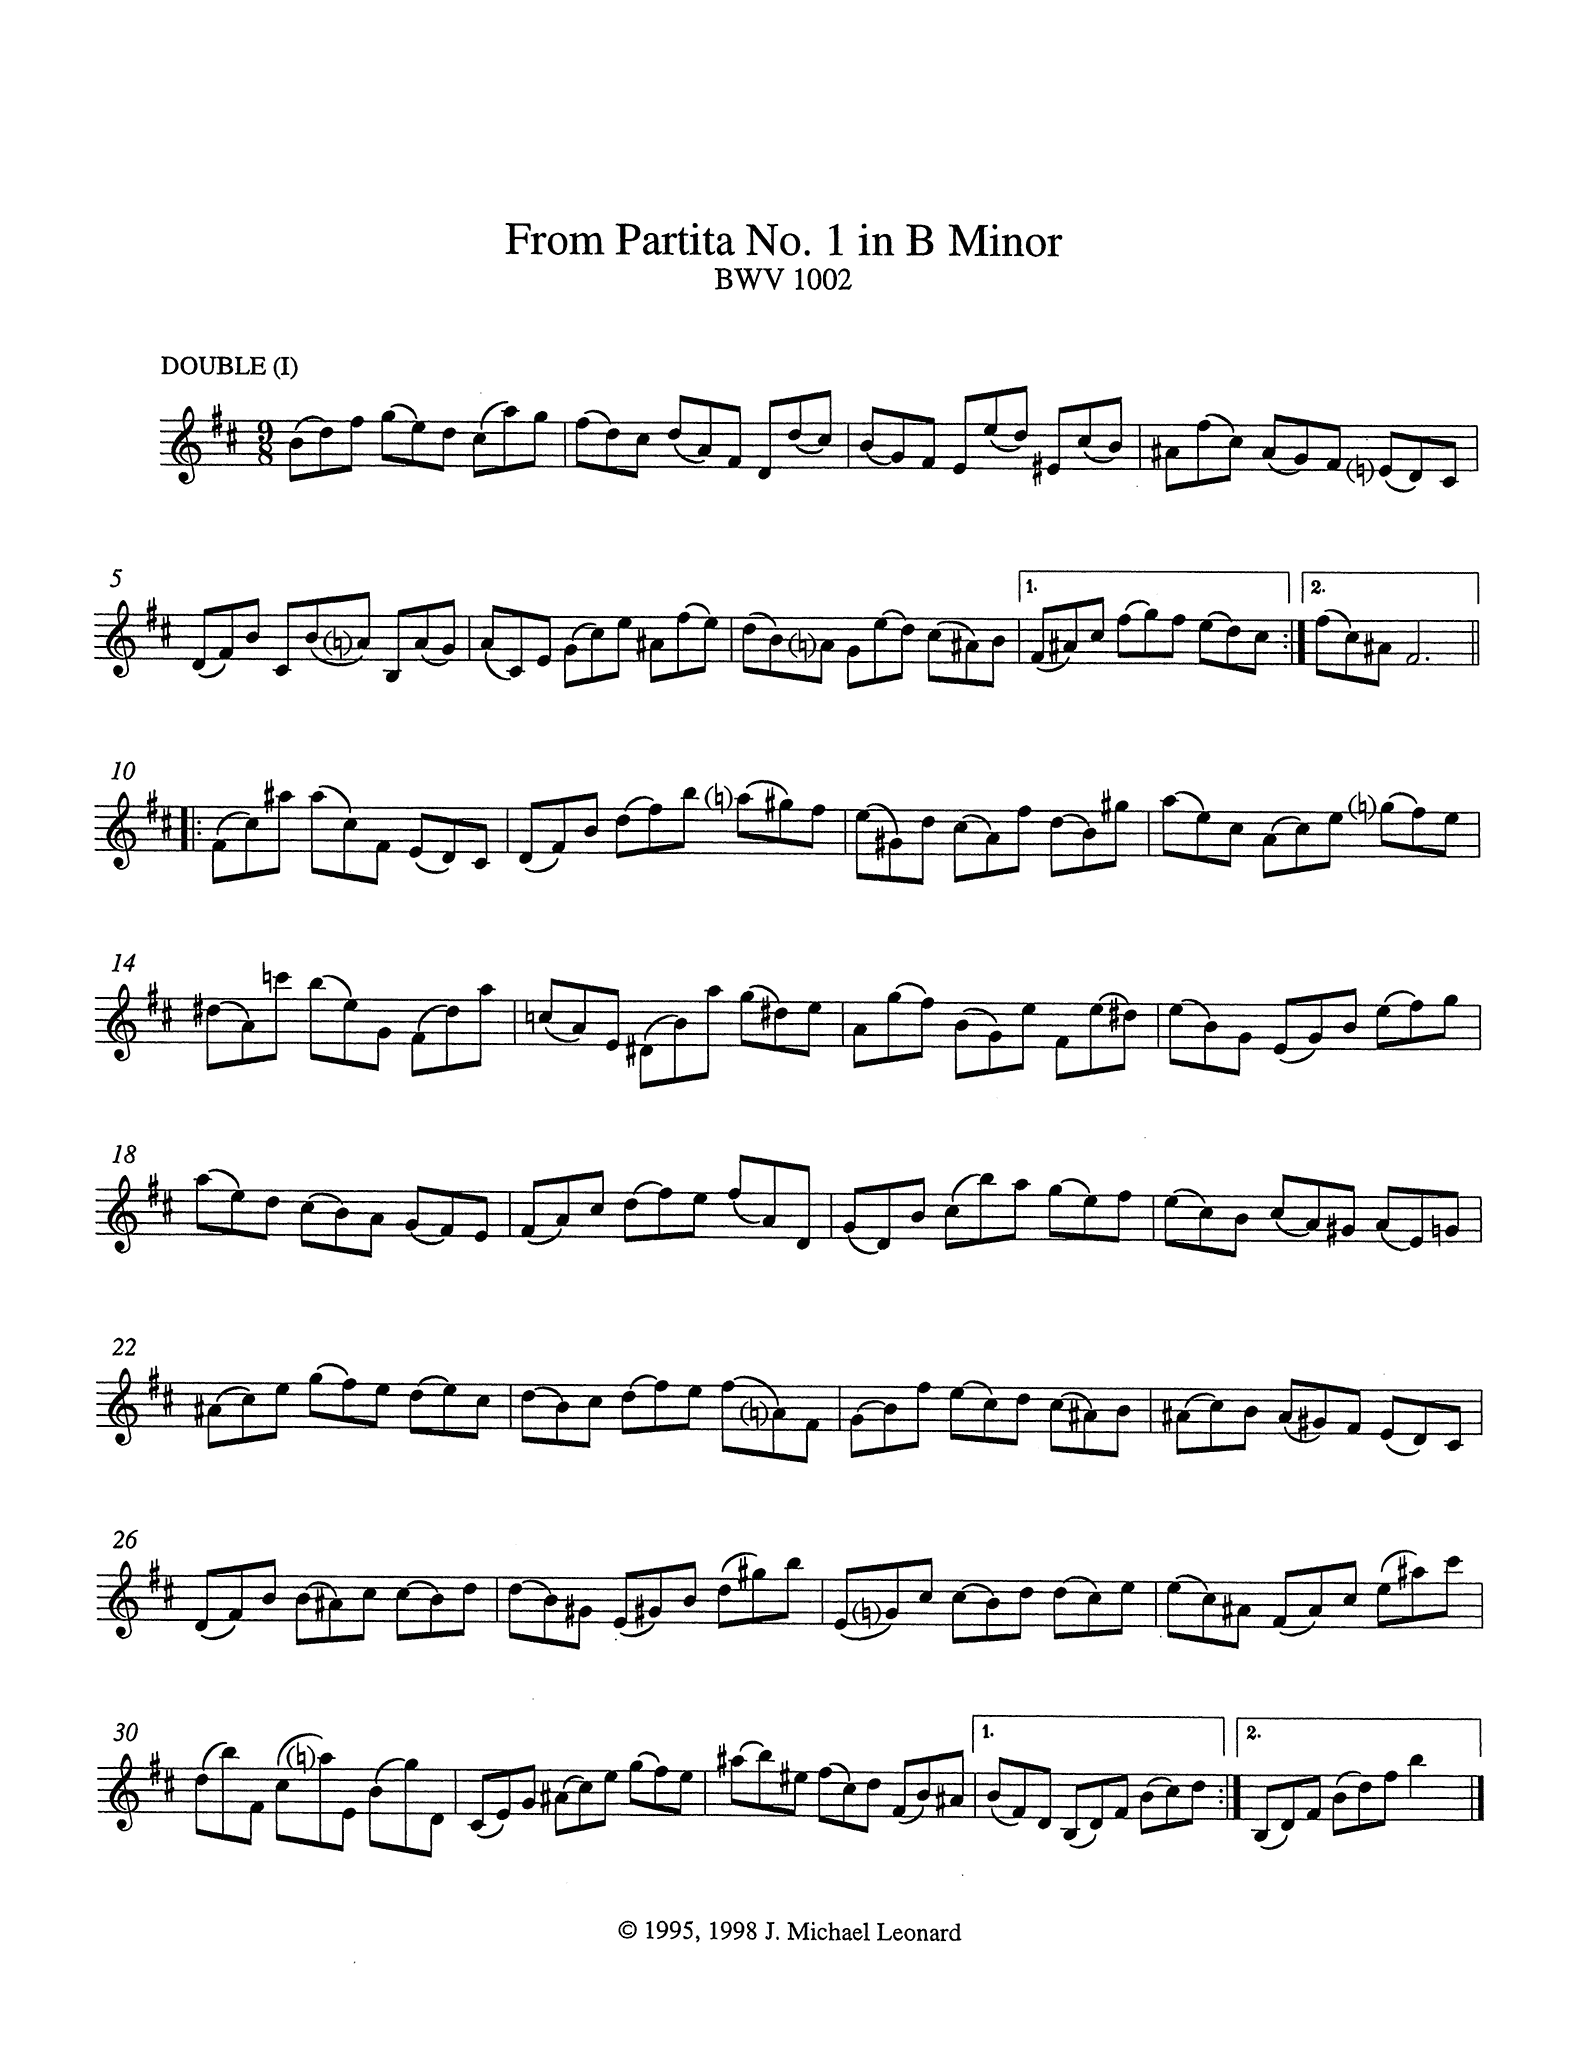 Bach Partita No. 1 BWV 1002 arranged for clarinet